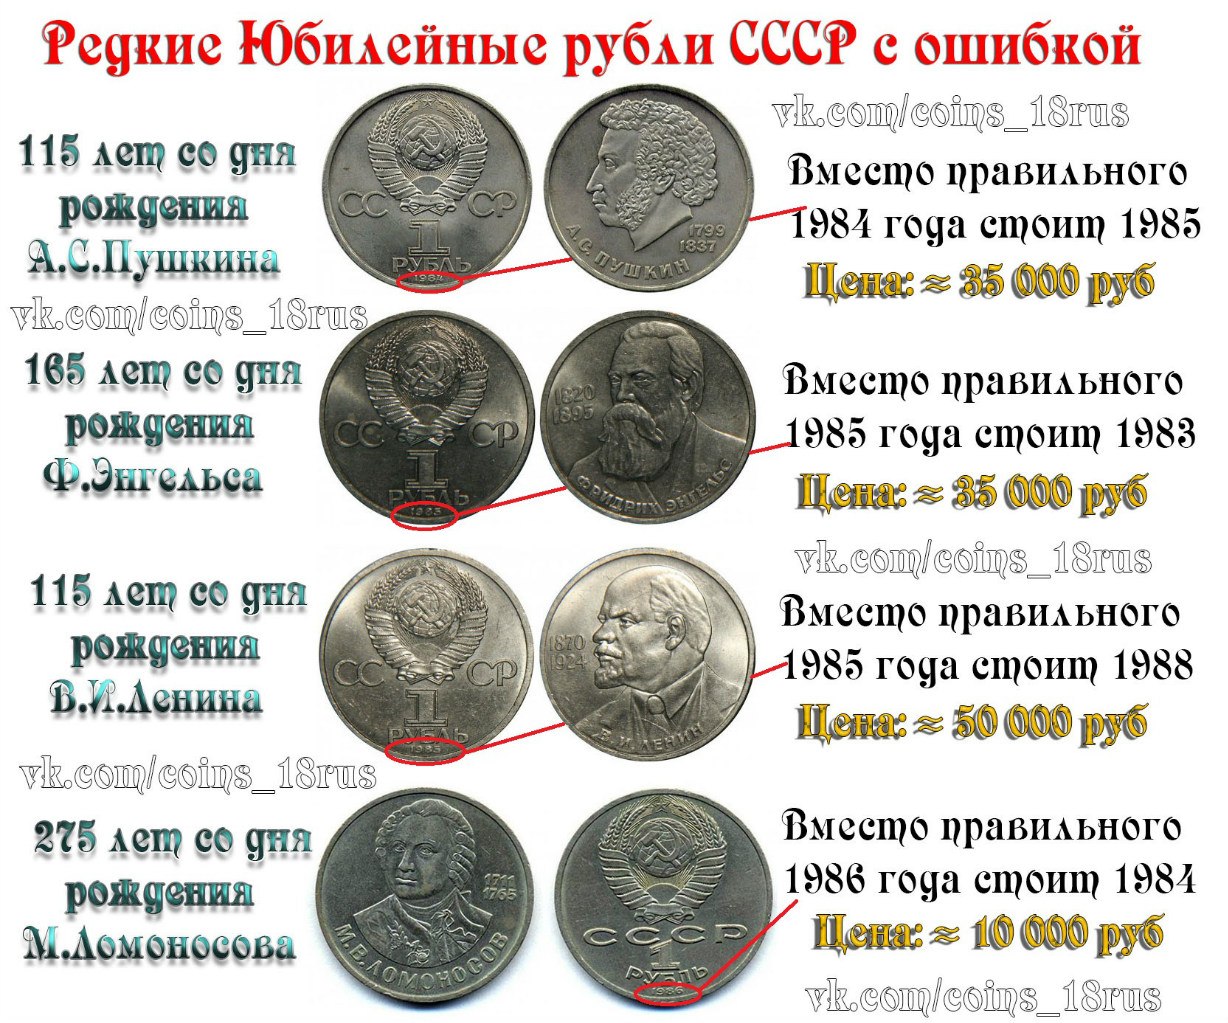 Ценные юбилейные монеты СССР